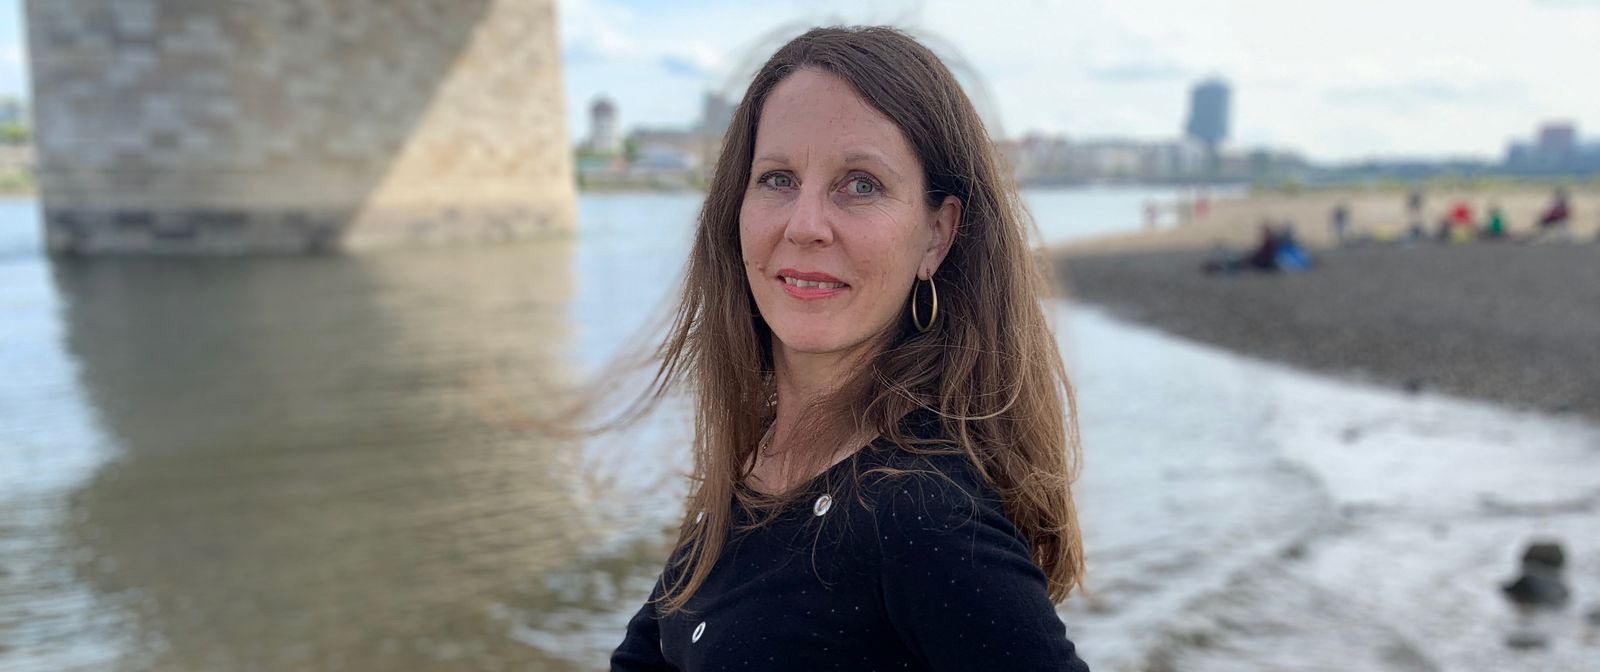 Autorin Petra Postert am Fluss unter einer Brücke.